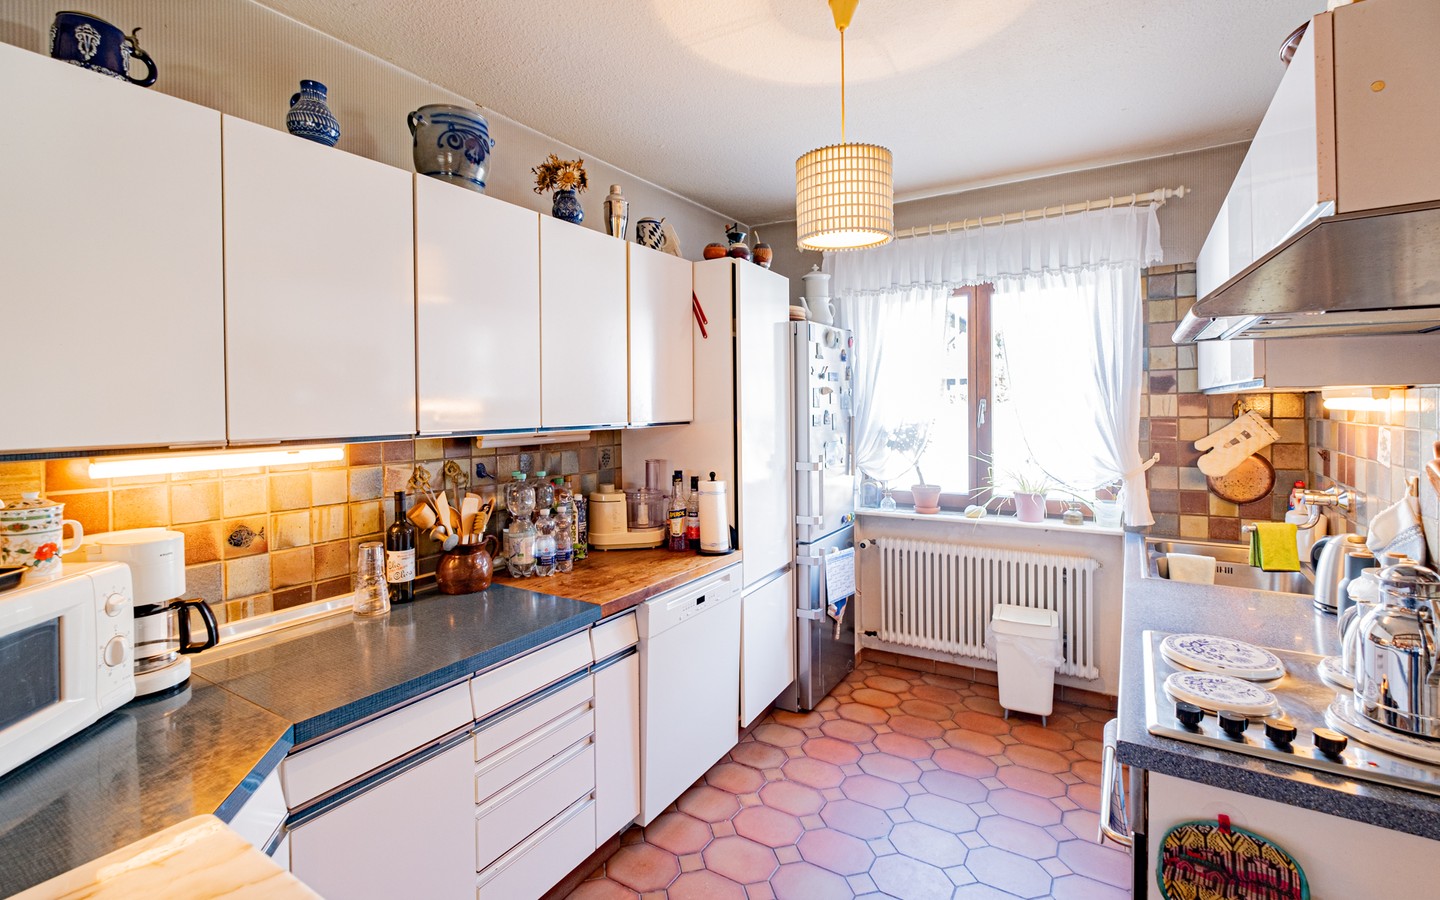 Küche - Ohne Käuferprovision in Hockenheim: Einfamilienhaus mit großem Garten und vielen Annehmlichkeiten